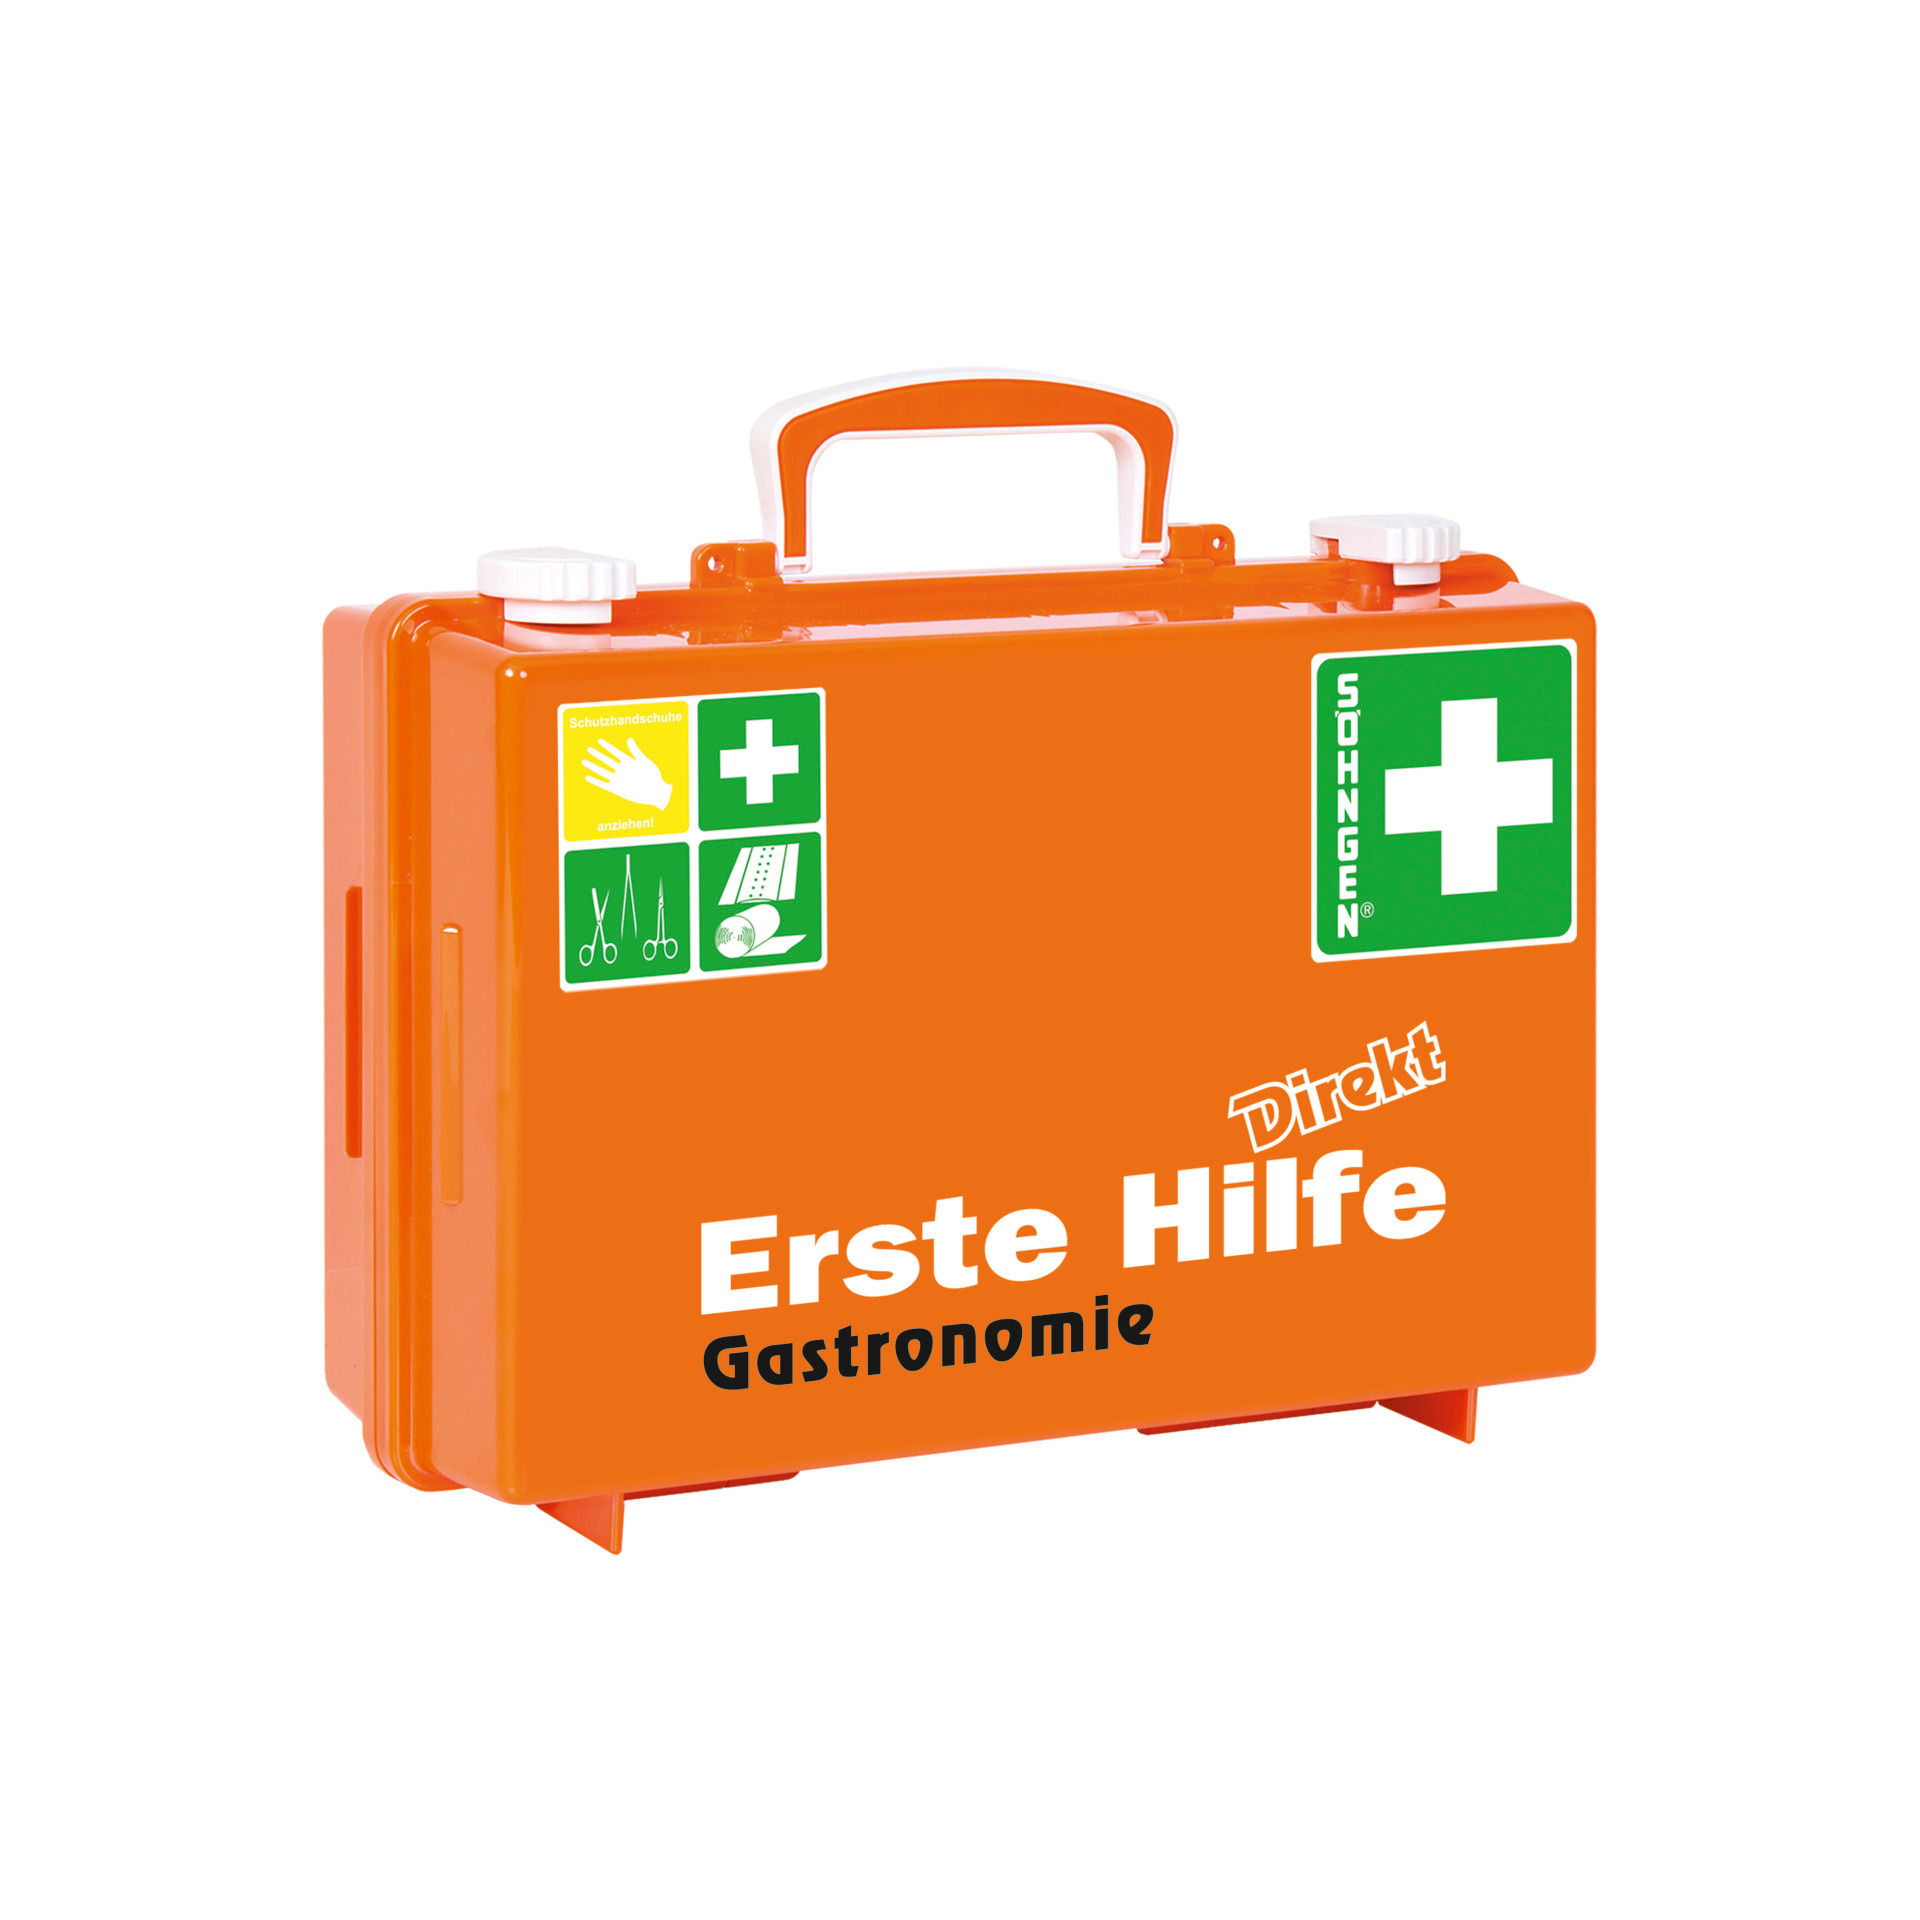 Erste-Hilfe-Koffer Direkt "Gastronomie" # 0370008 - nach DIN 13157